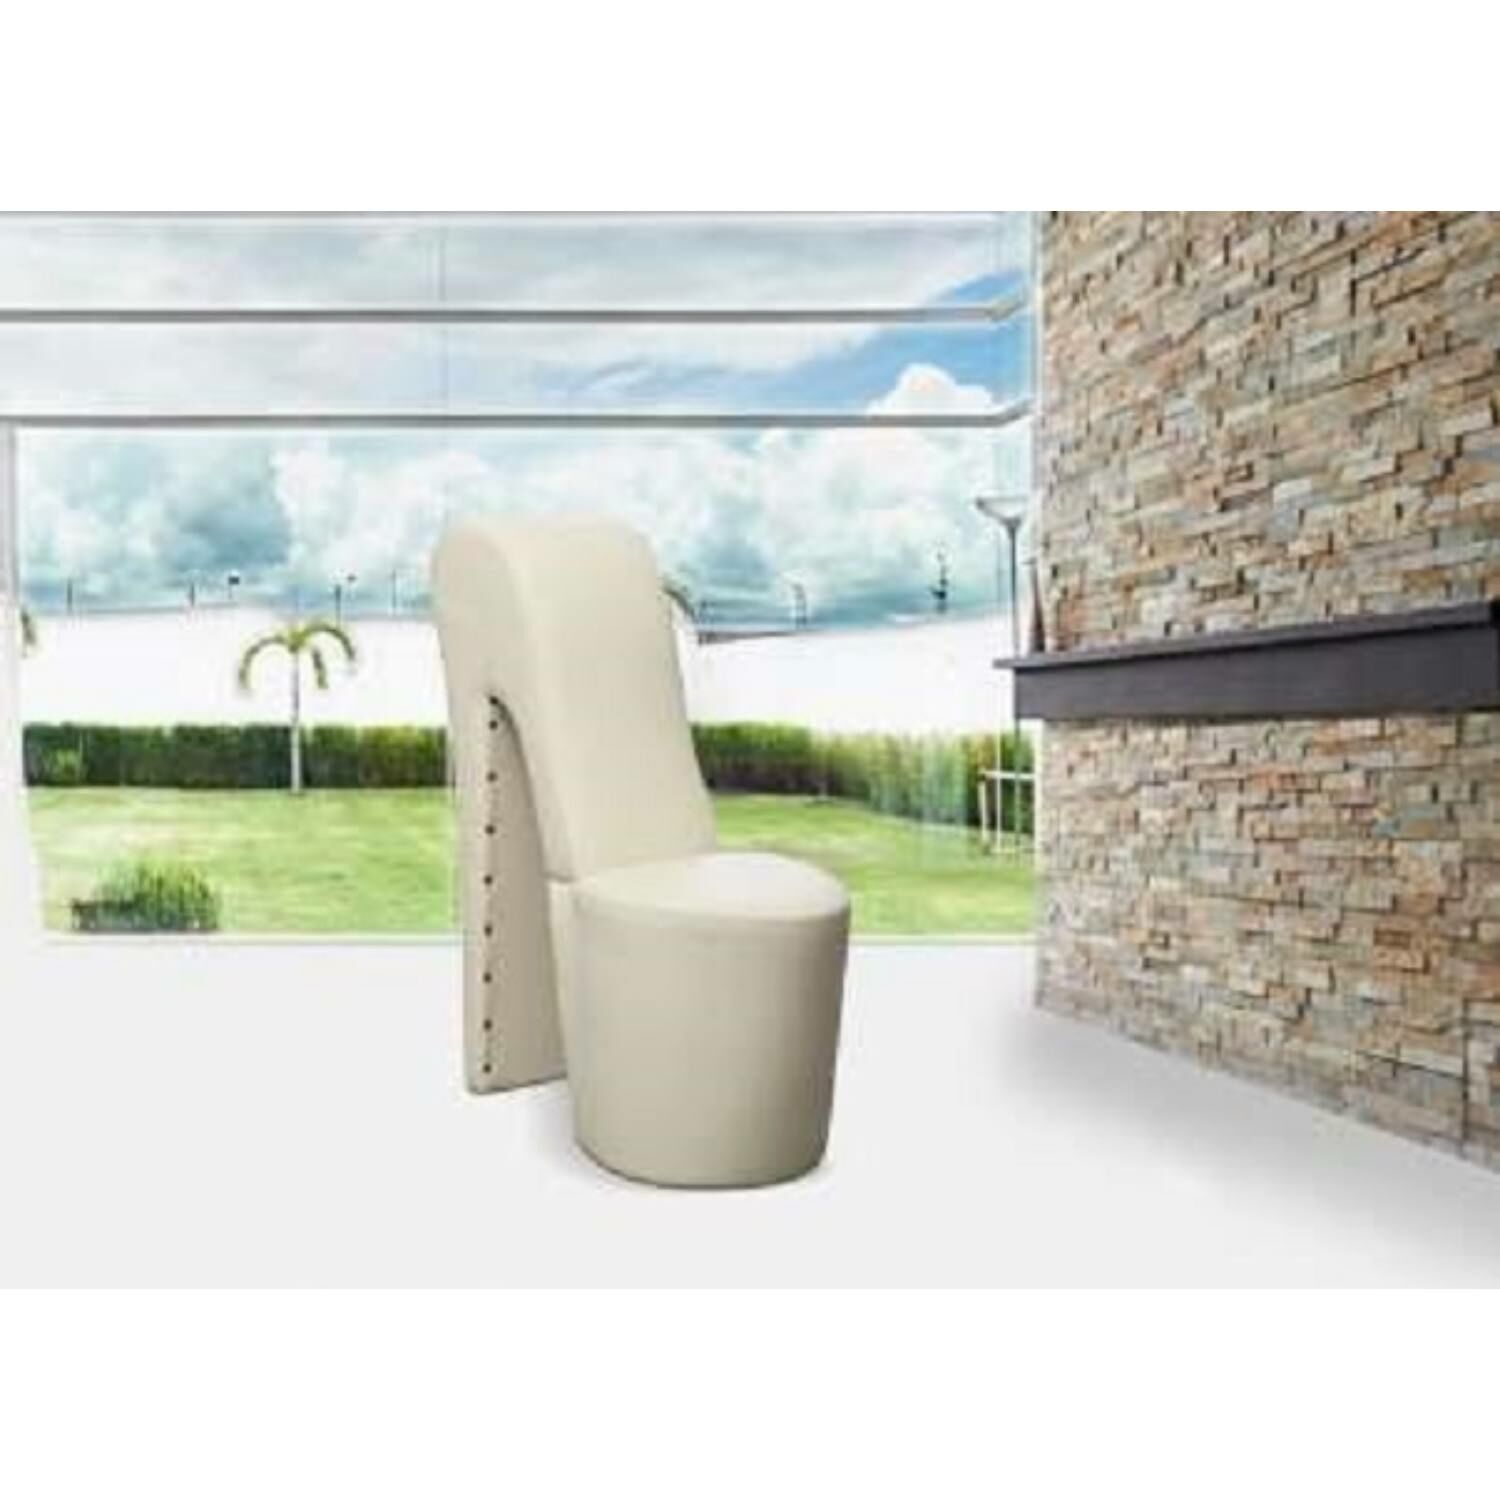 Bota futurisztikus dizájnú fotel FEHÉR színben